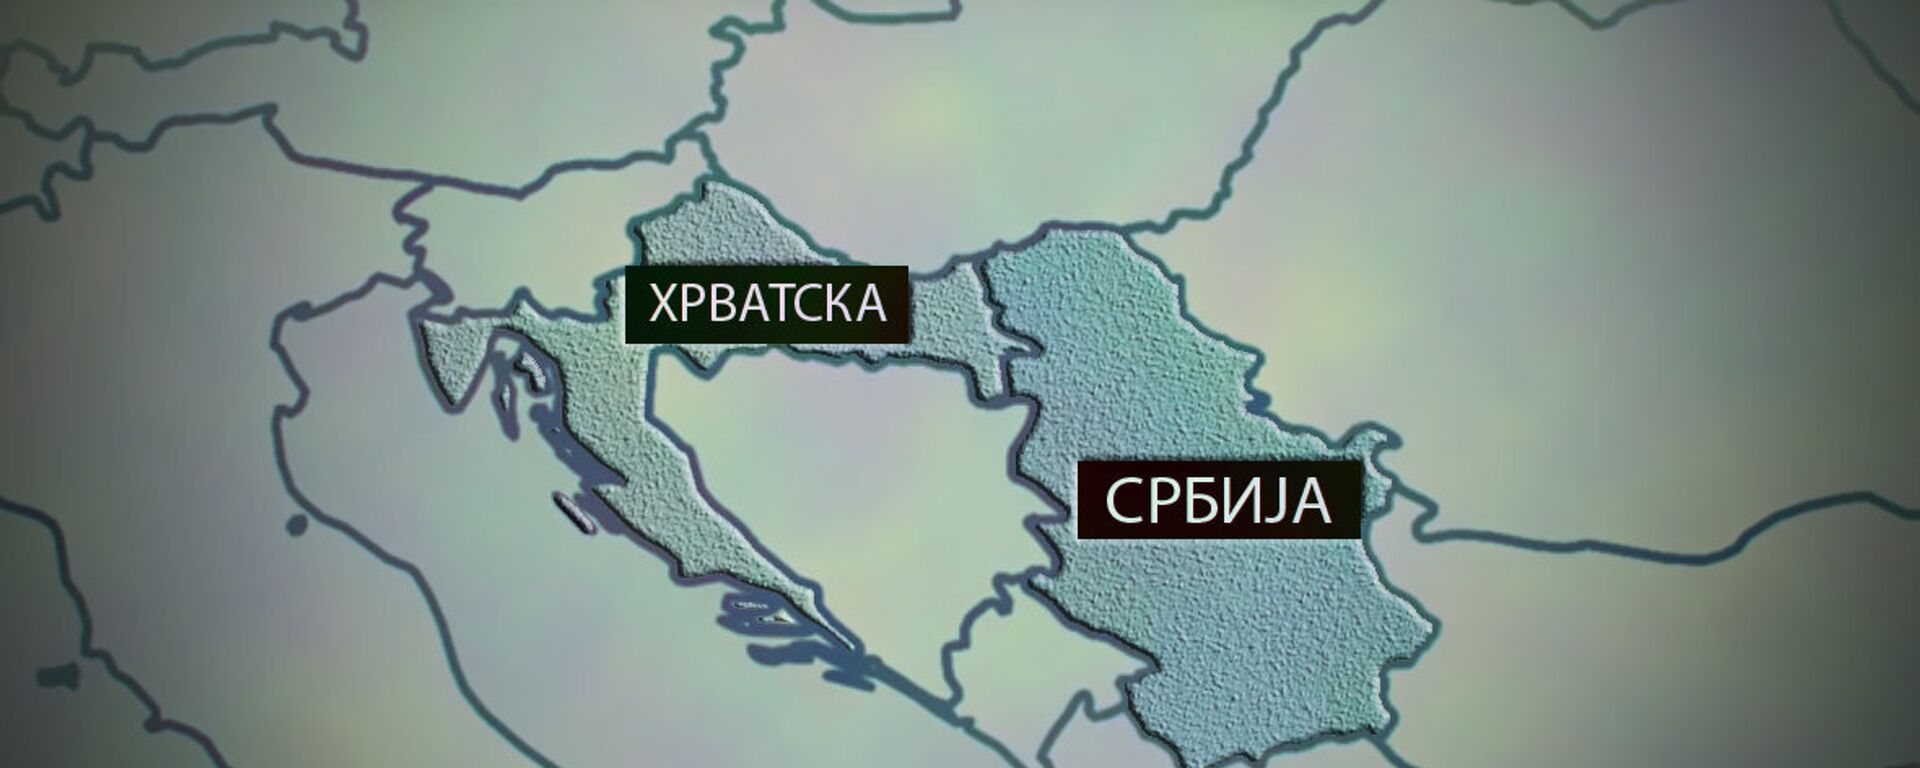 Karta Srbija - Hrvatska - Sputnik Srbija, 1920, 10.10.2021